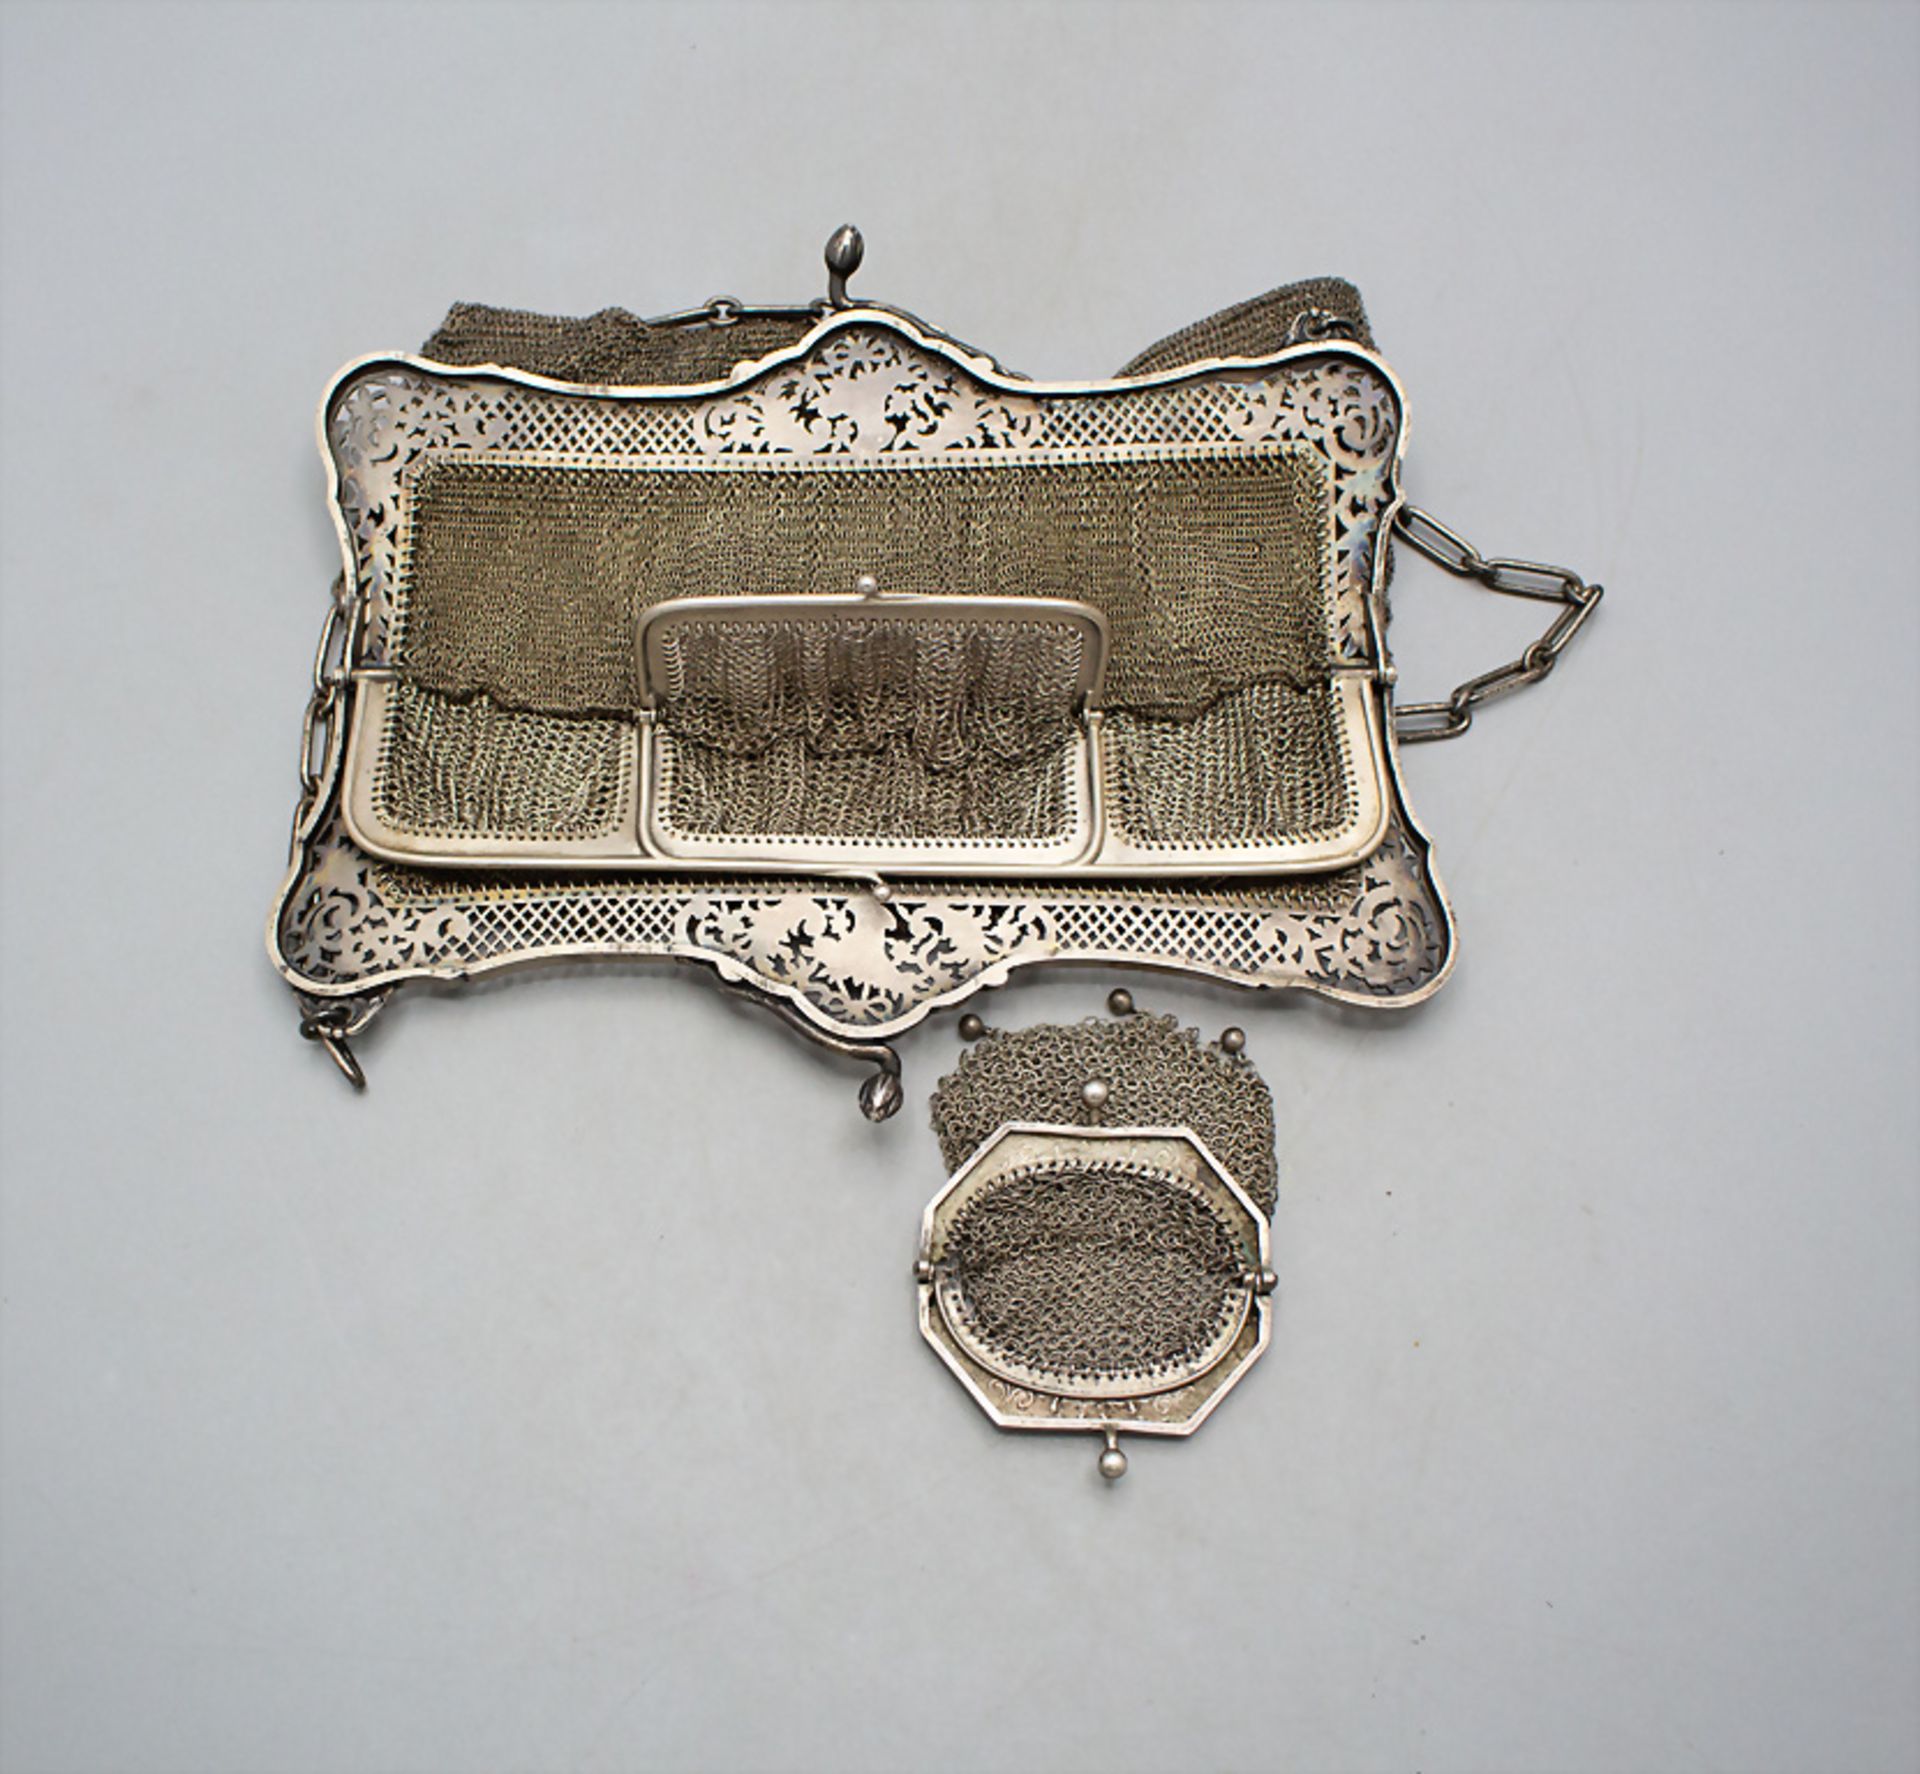 Silber Abendtasche mit Geldbörse / Kettentasche/ A silver evening bag with silver wallet, ... - Image 3 of 4